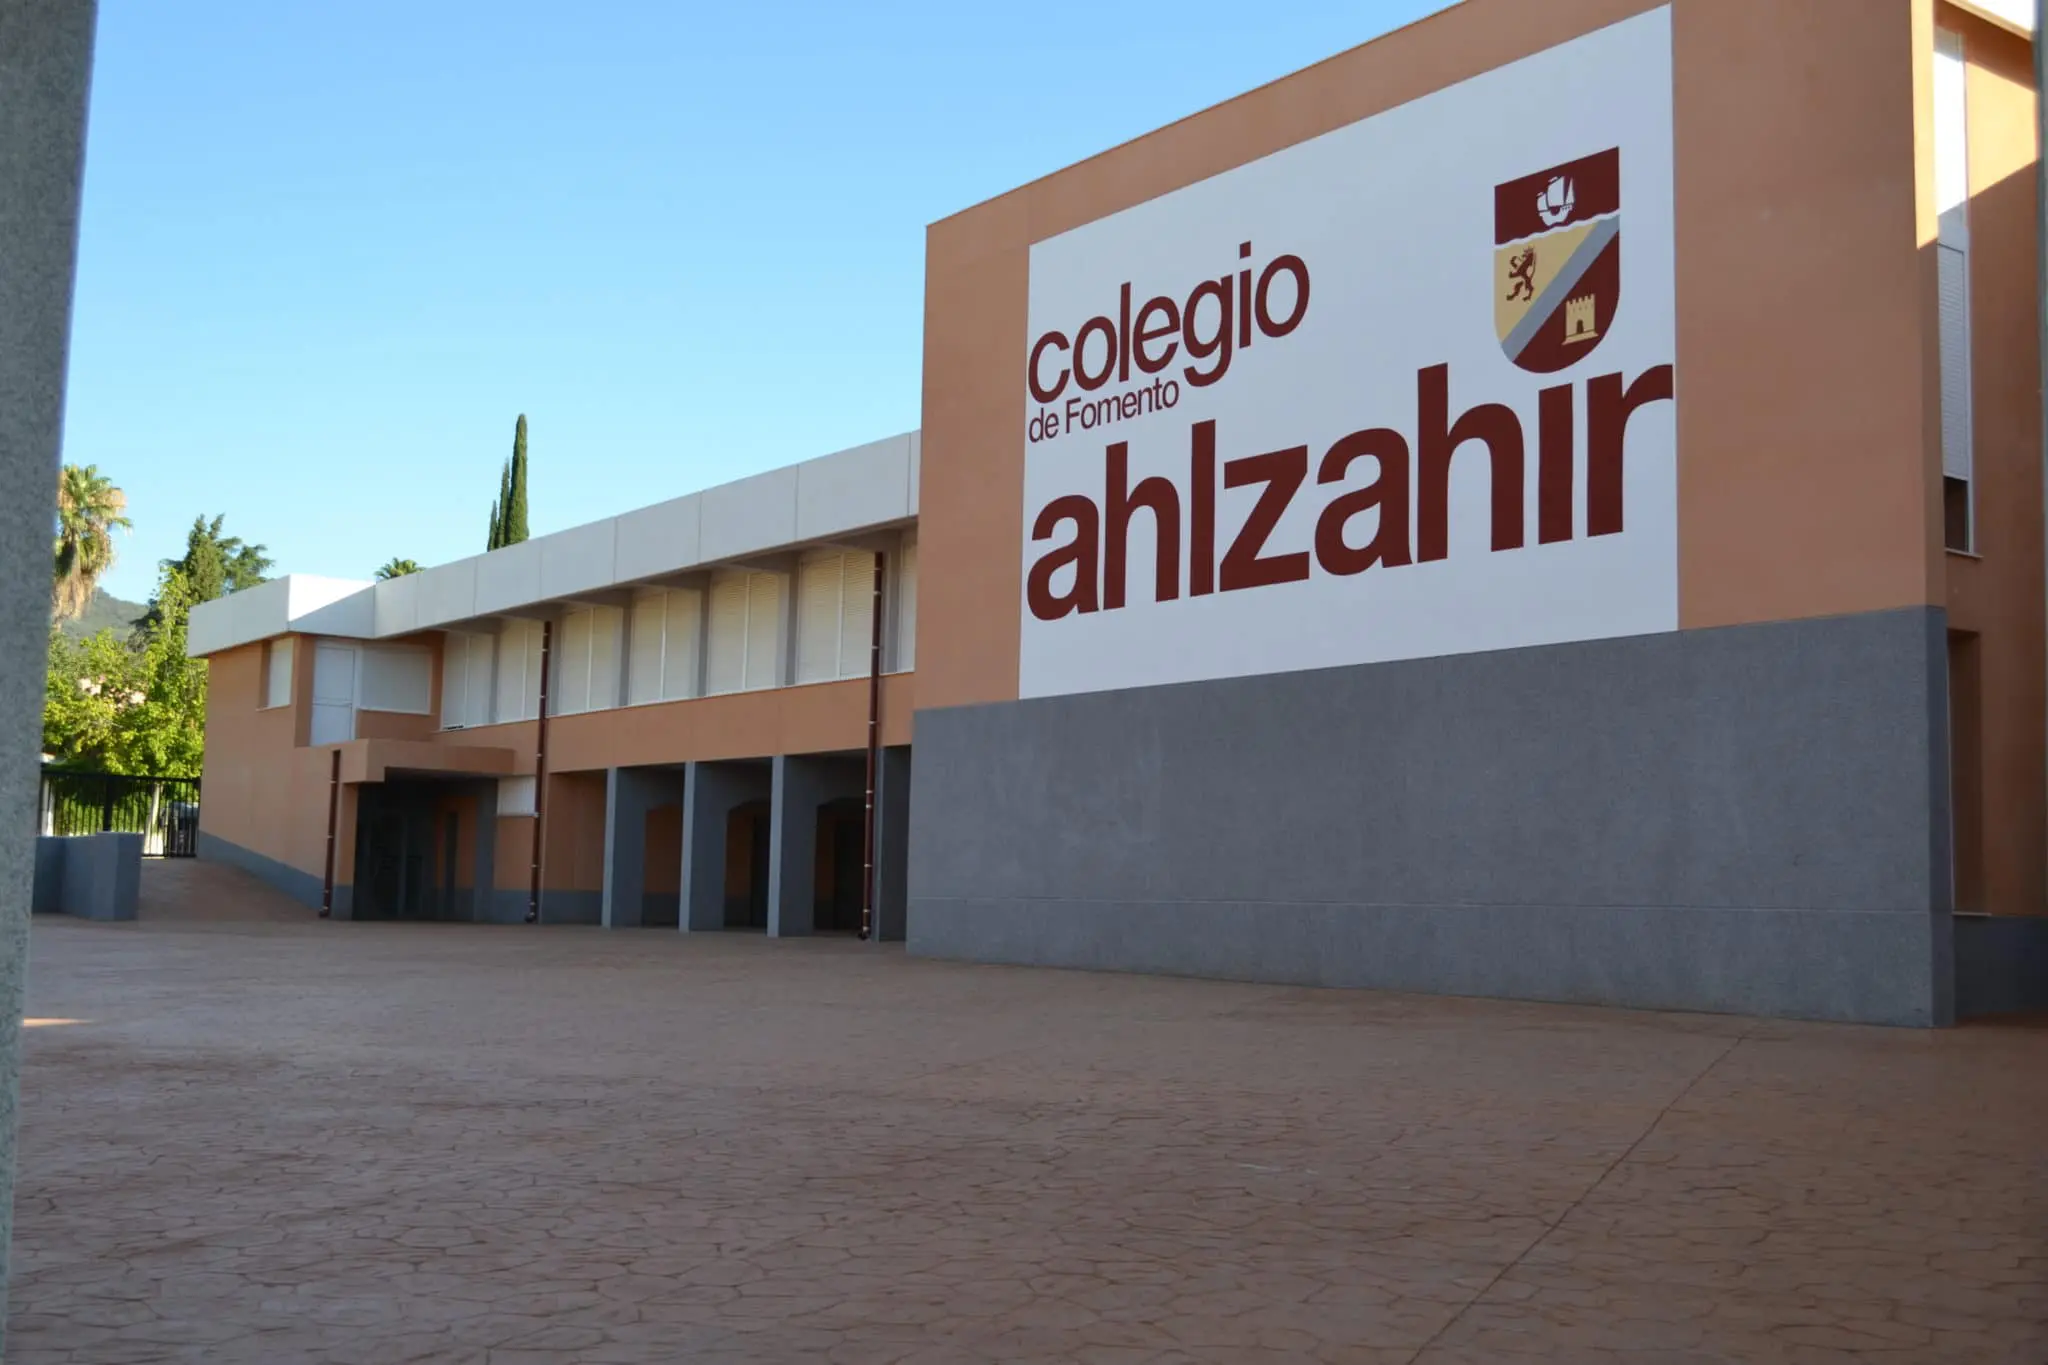 Colegio de Fomento Ahlzahir: Colegio Privado en CORDOBA,Primaria,Secundaria,Bachillerato,Inglés,Católico,